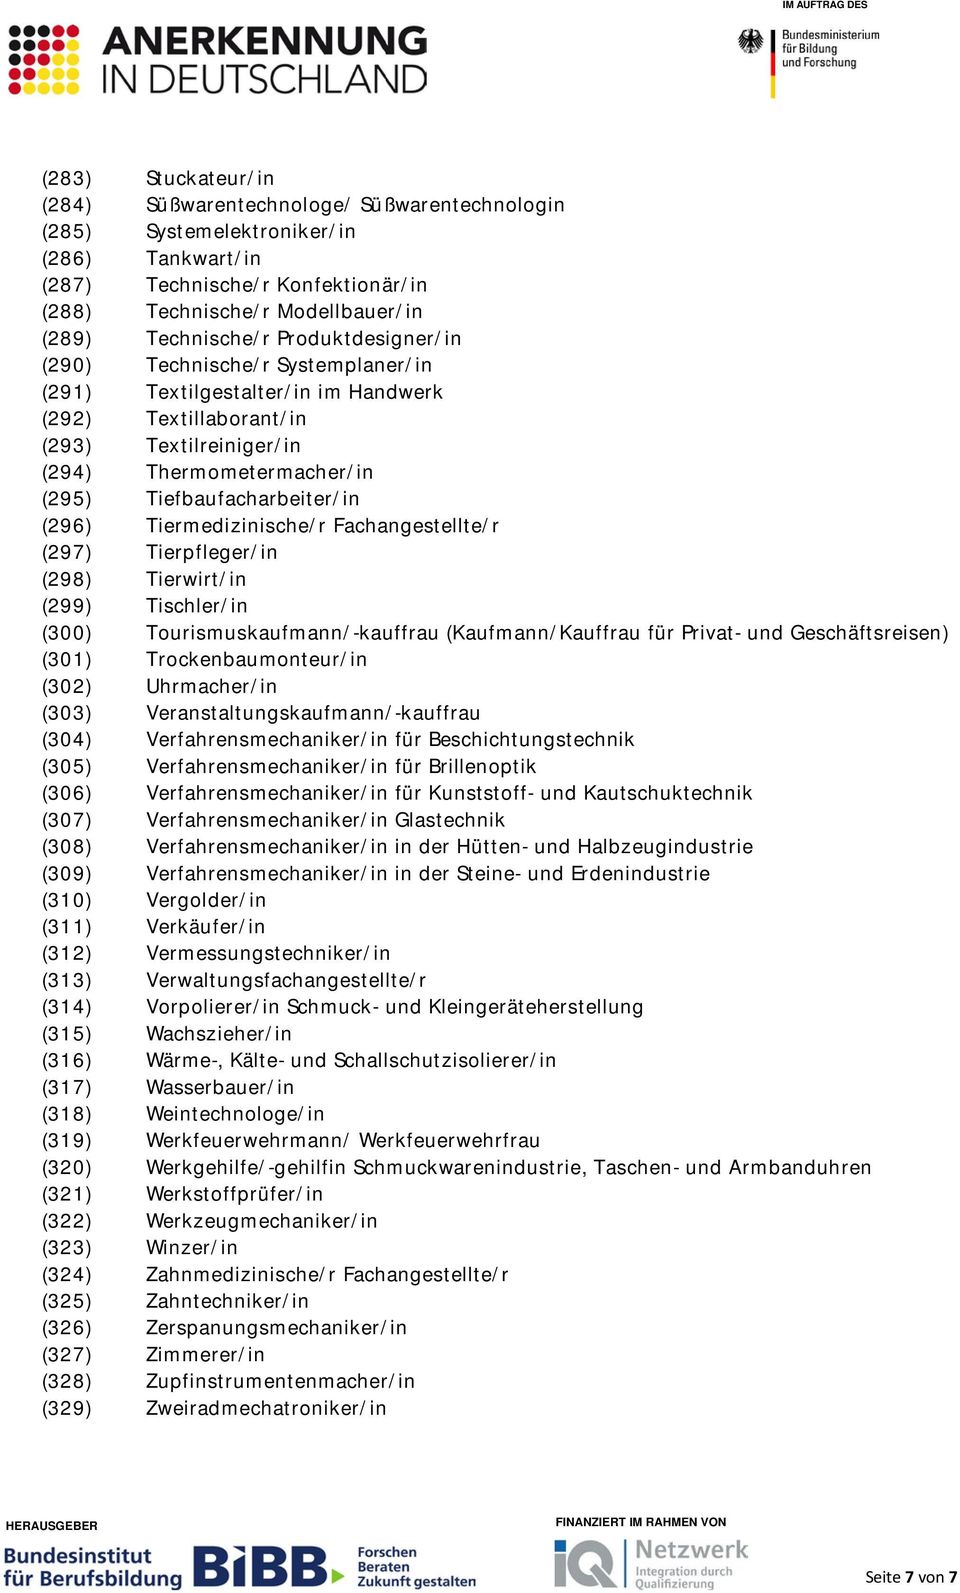 (296) Tiermedizinische/r Fachangestellte/r (297) Tierpfleger/in (298) Tierwirt/in (299) Tischler/in (300) Tourismuskaufmann/-kauffrau (Kaufmann/Kauffrau für Privat- und Geschäftsreisen) (301)